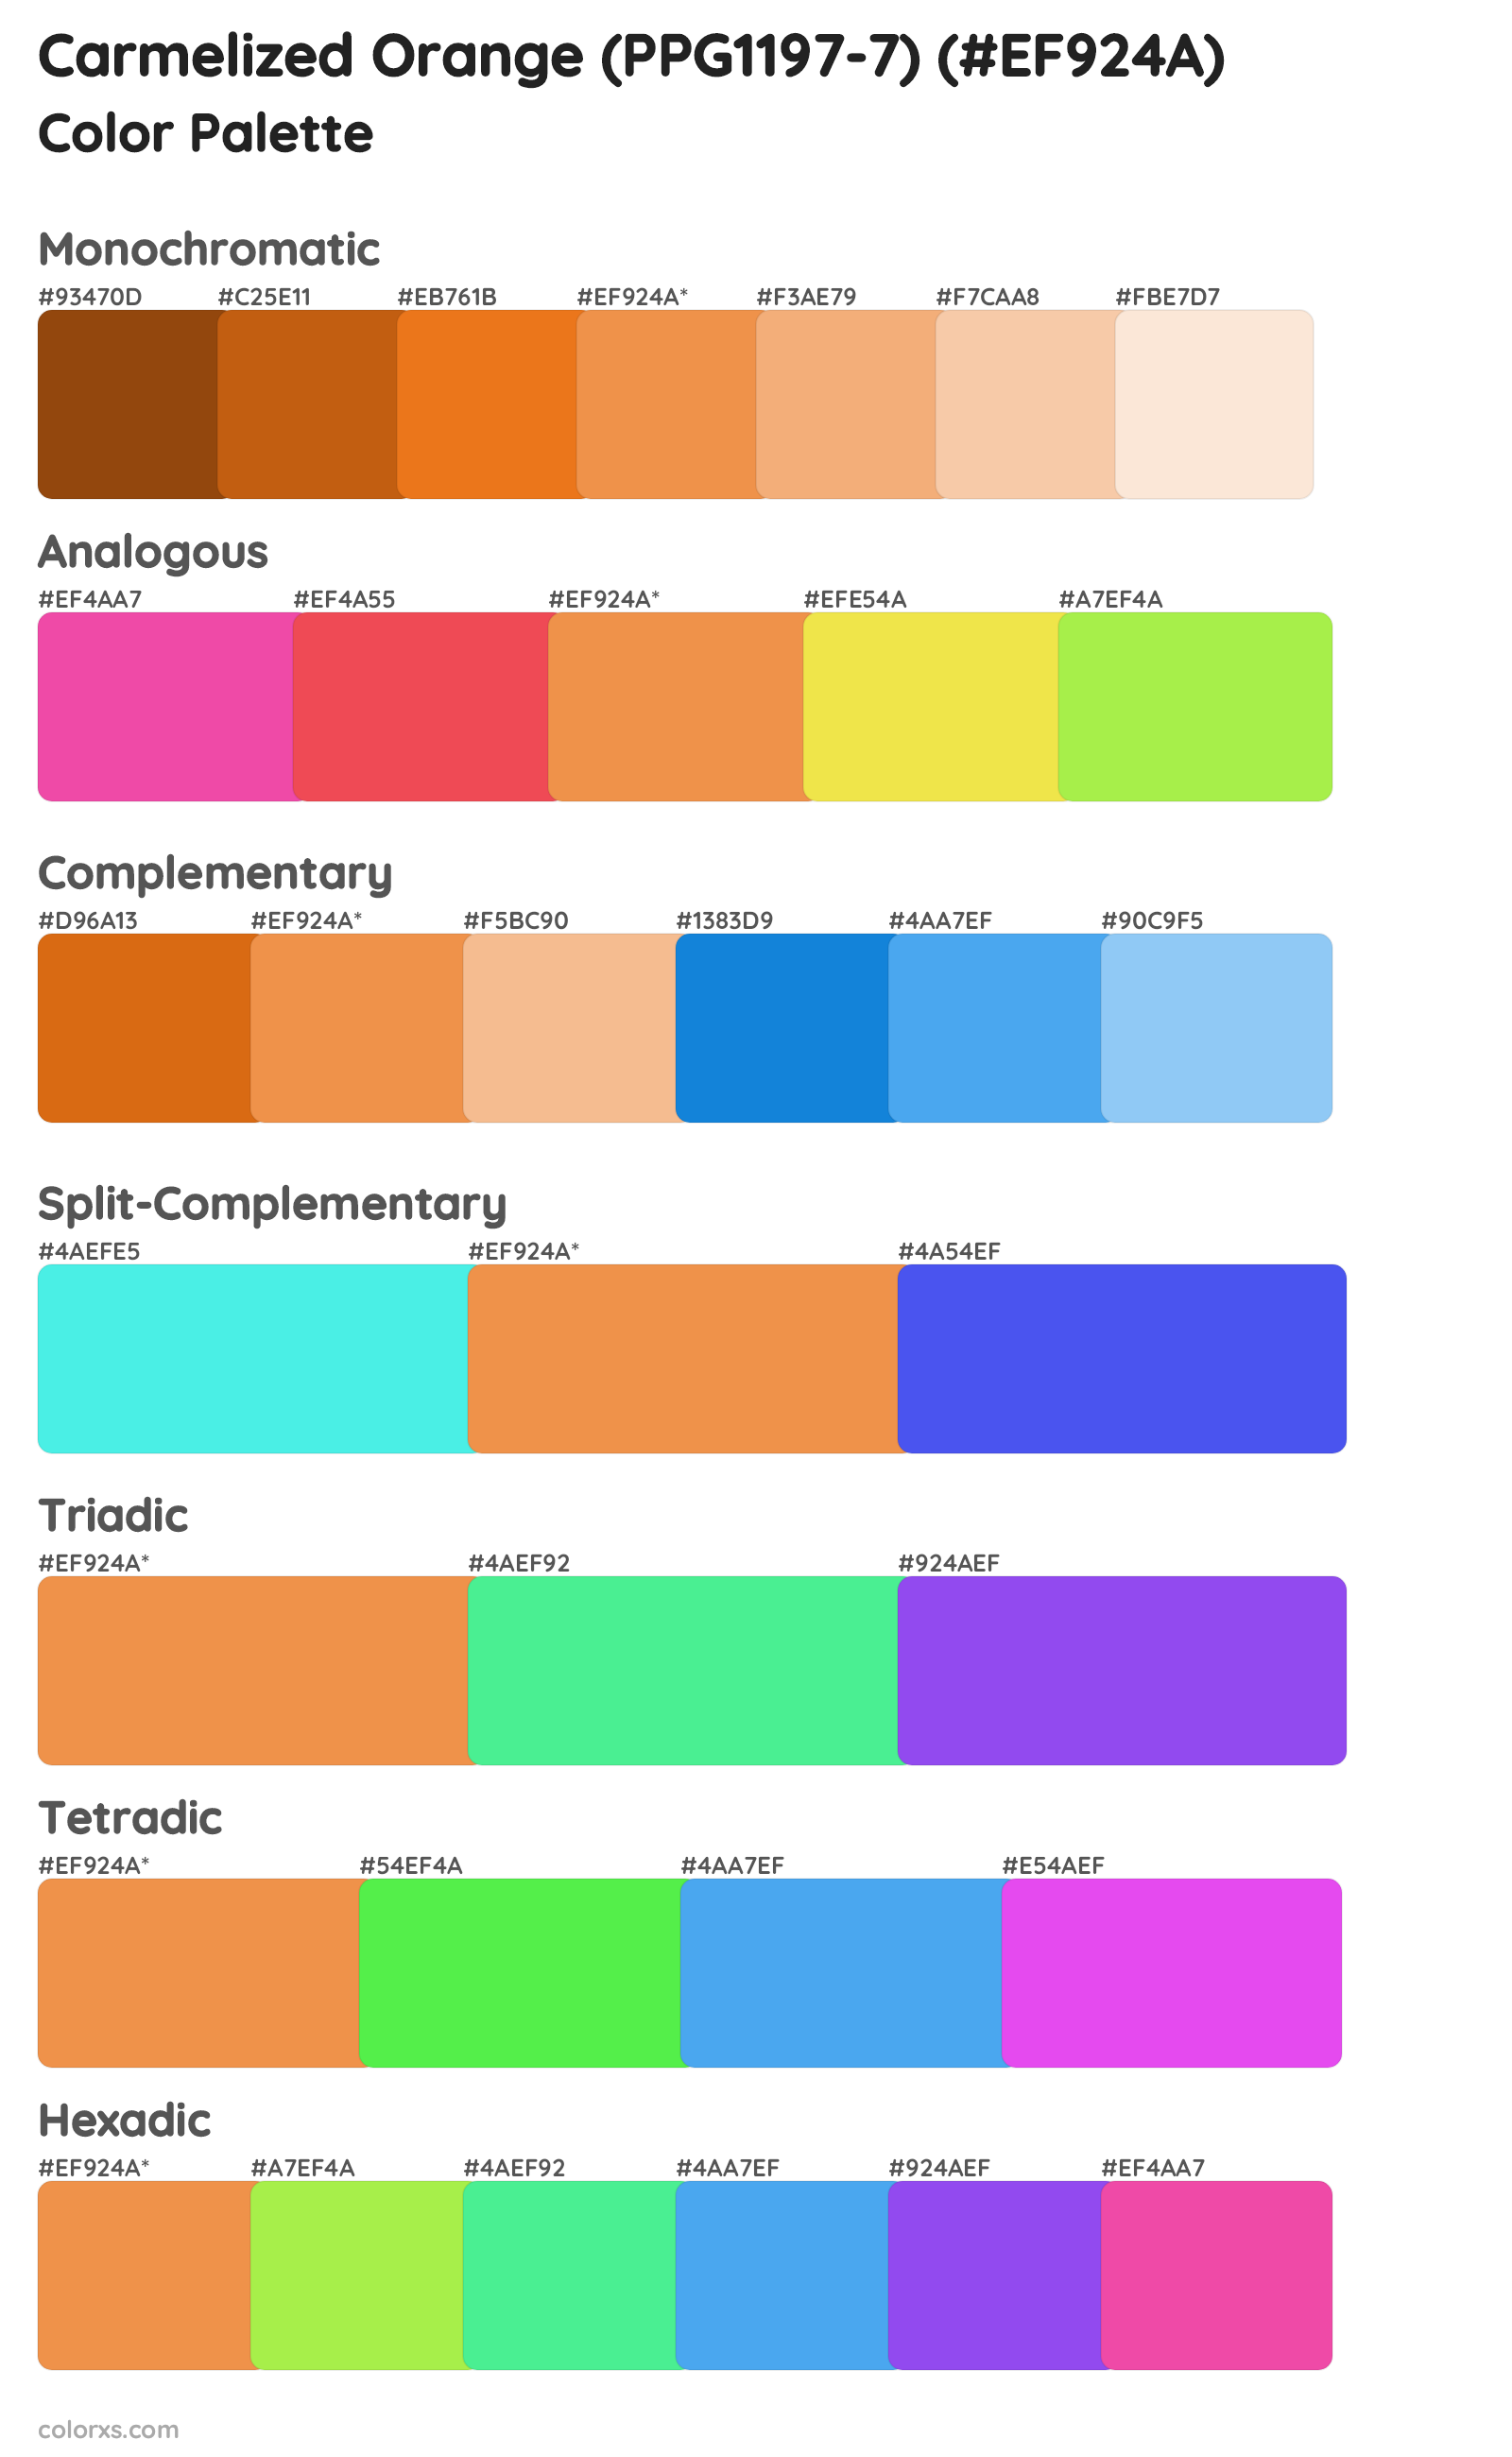 Carmelized Orange (PPG1197-7) Color Scheme Palettes